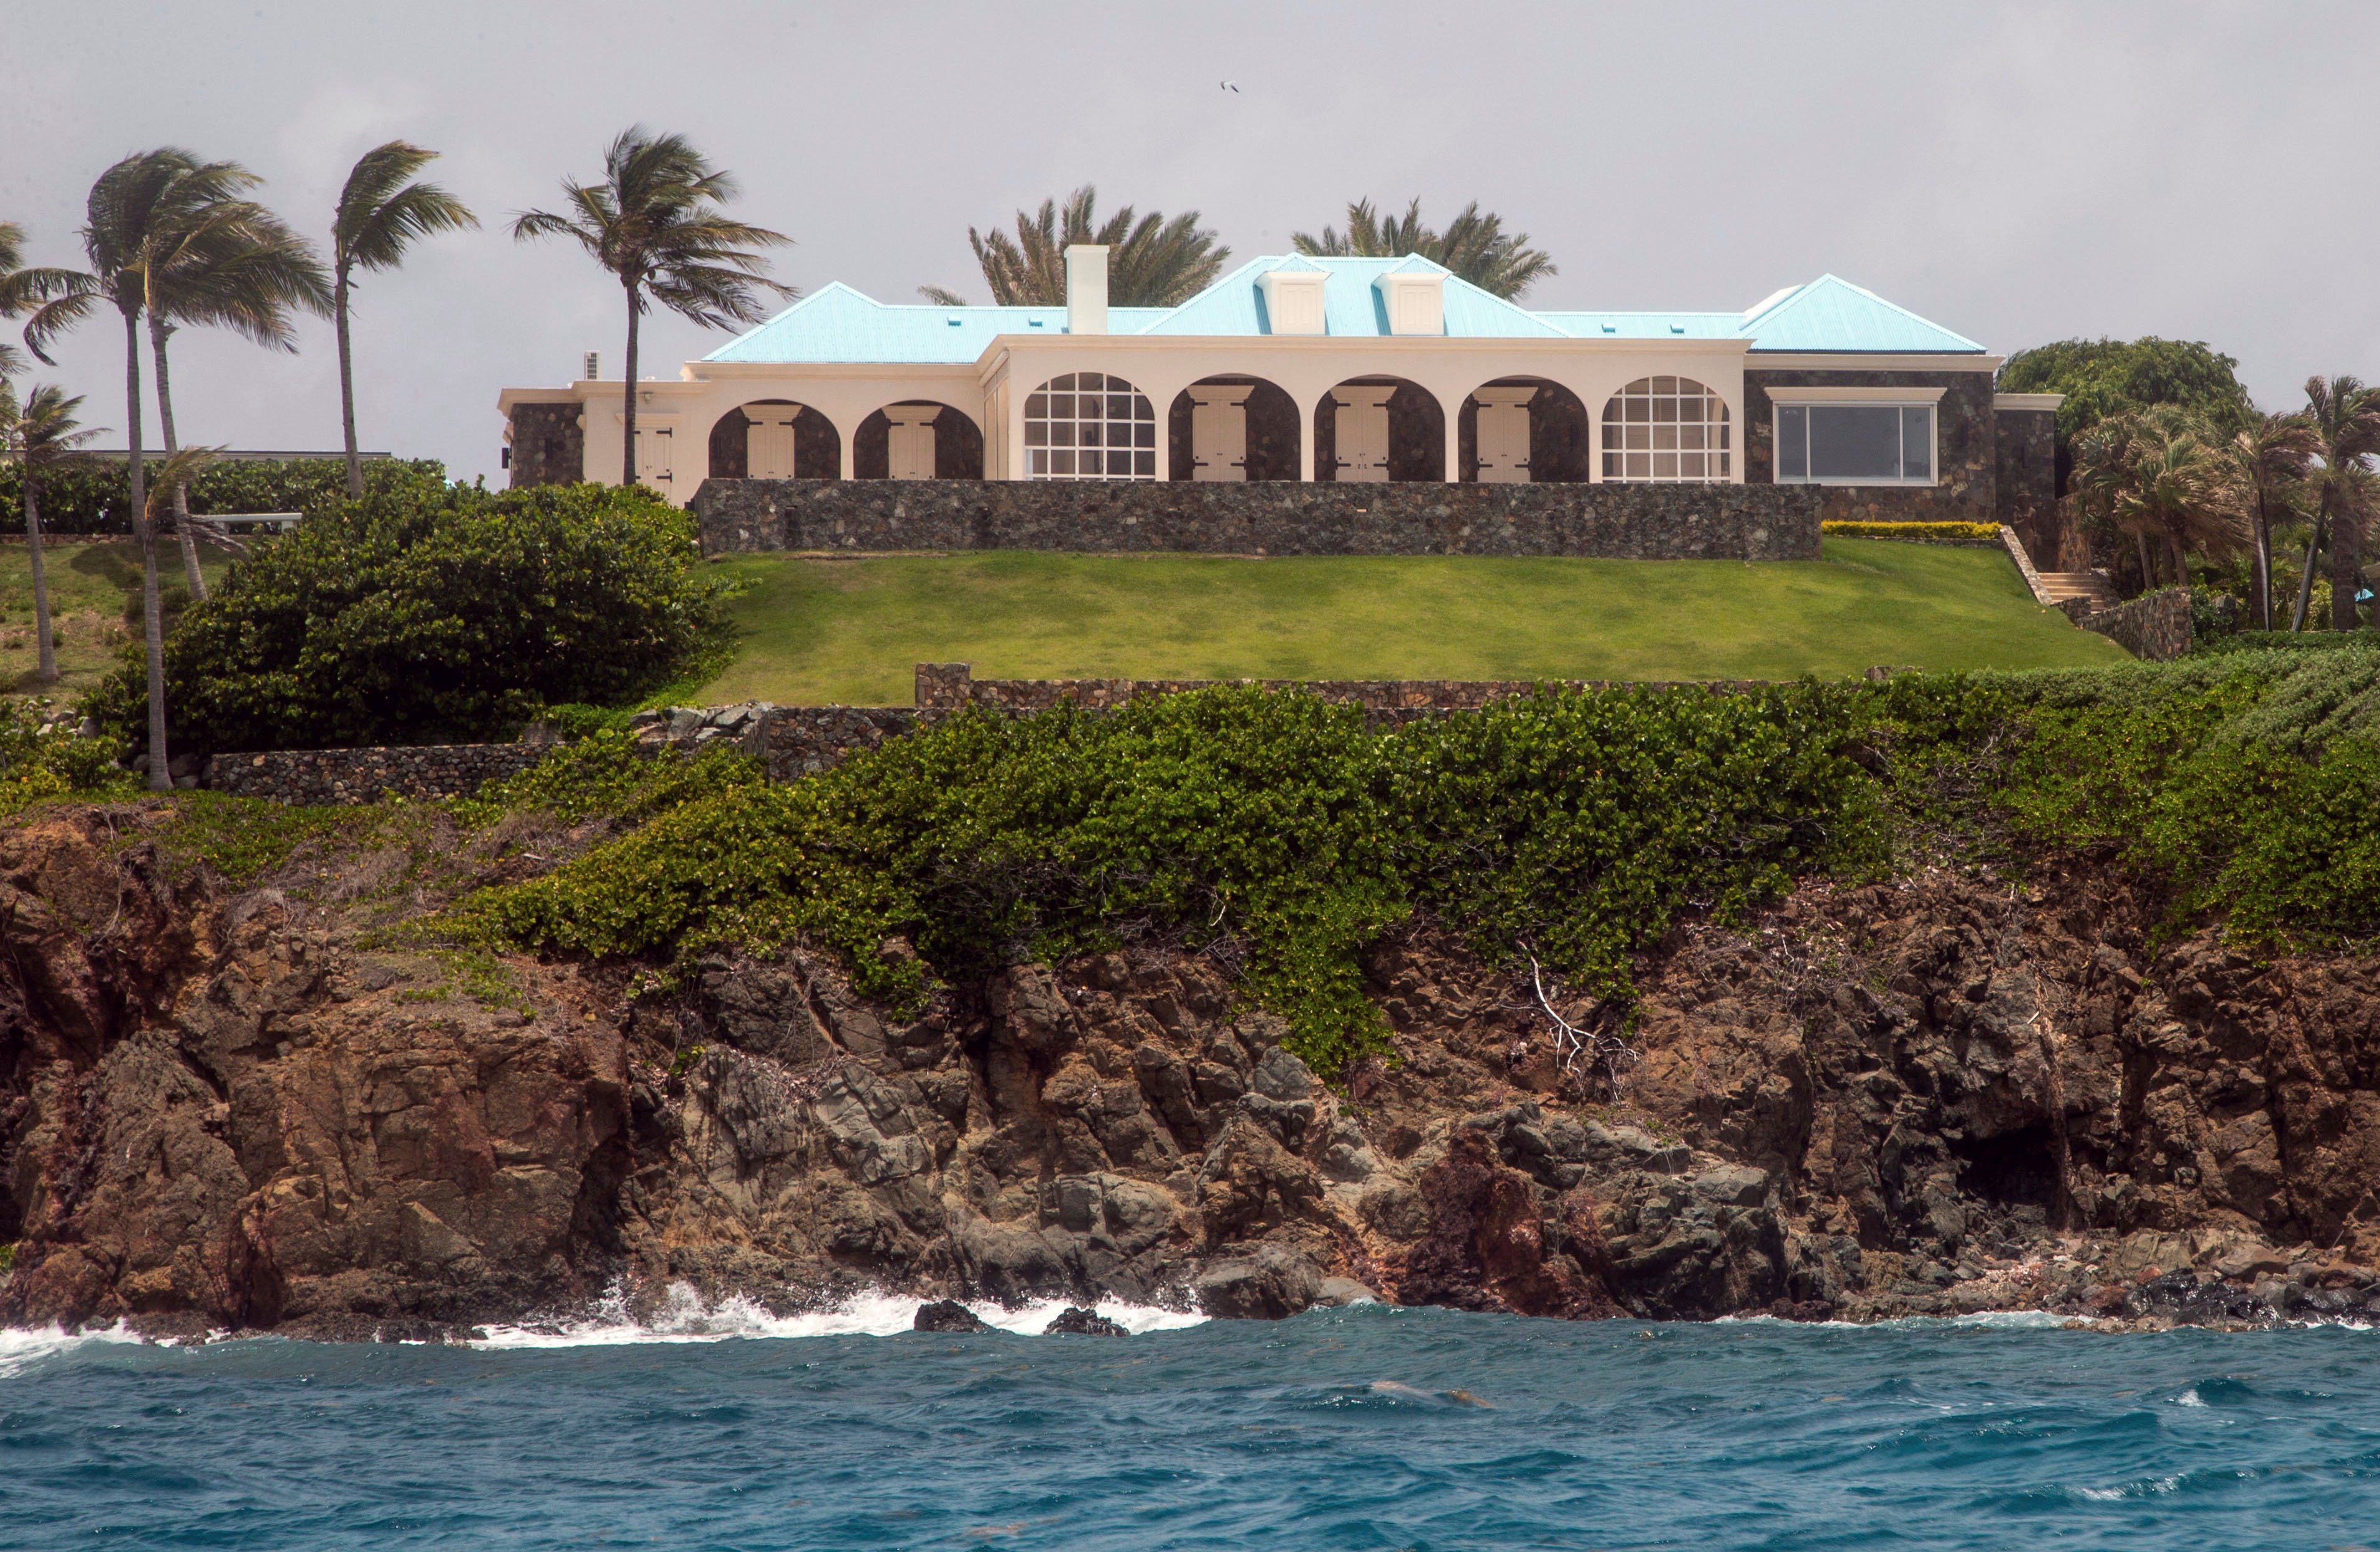 Jeffery Epstein’s estate on Little Saint James Island in the U. S. Virgin Islands in 2019.